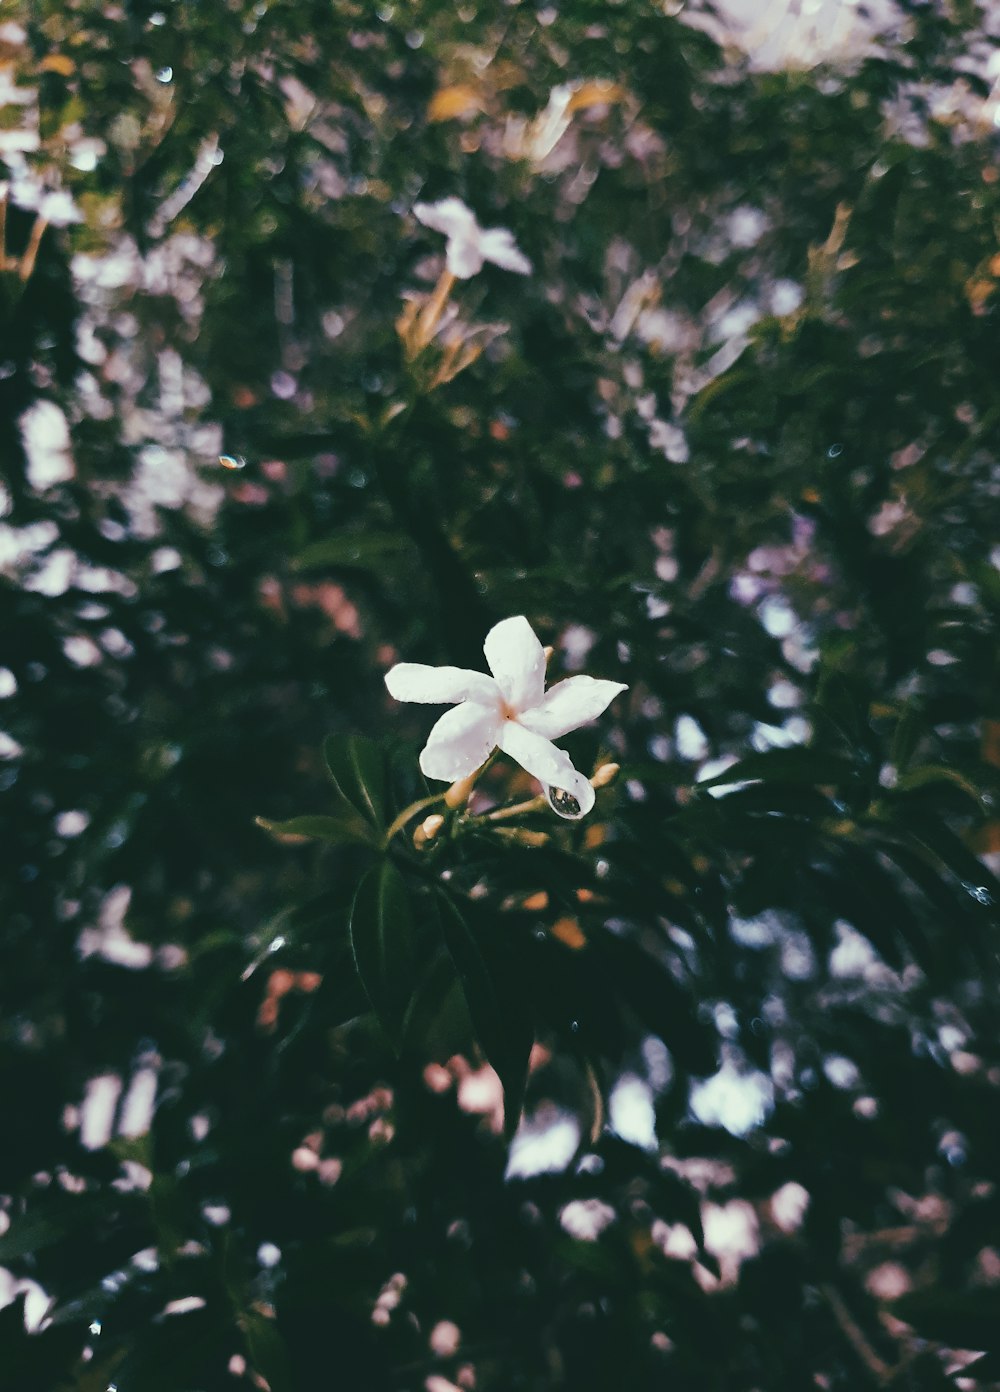 white petaled flower during daytime